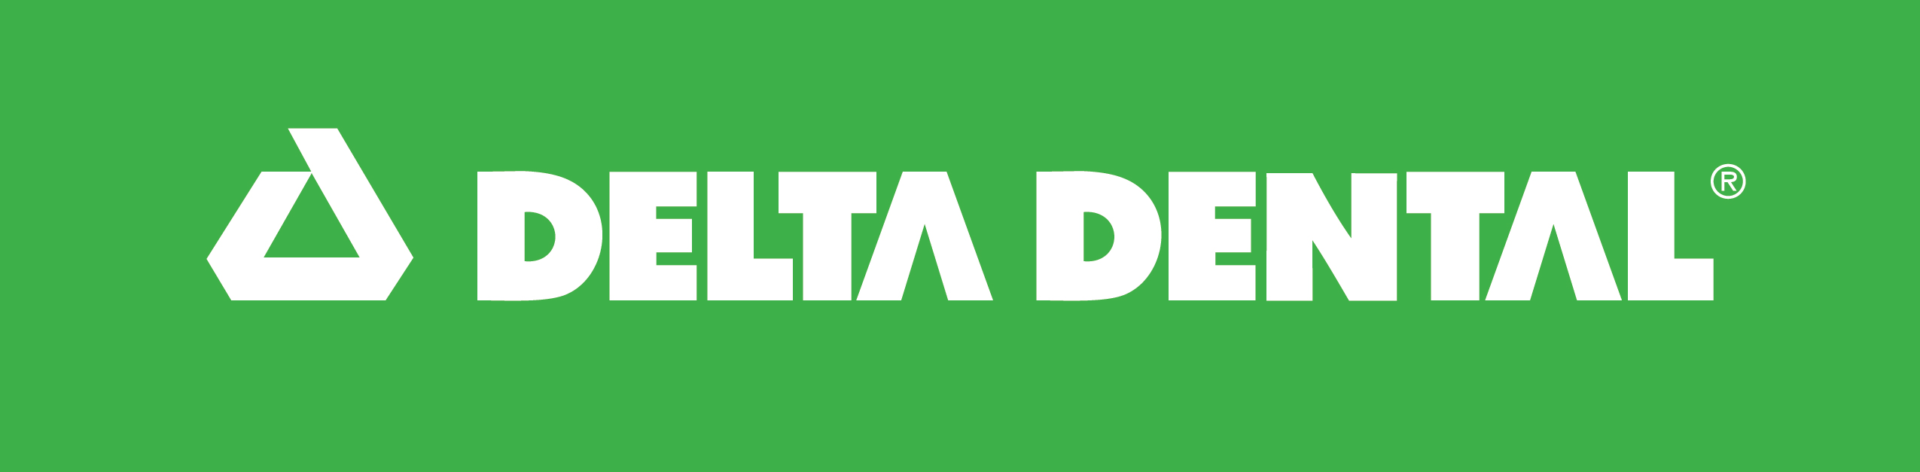 Logos-Delta-Dental